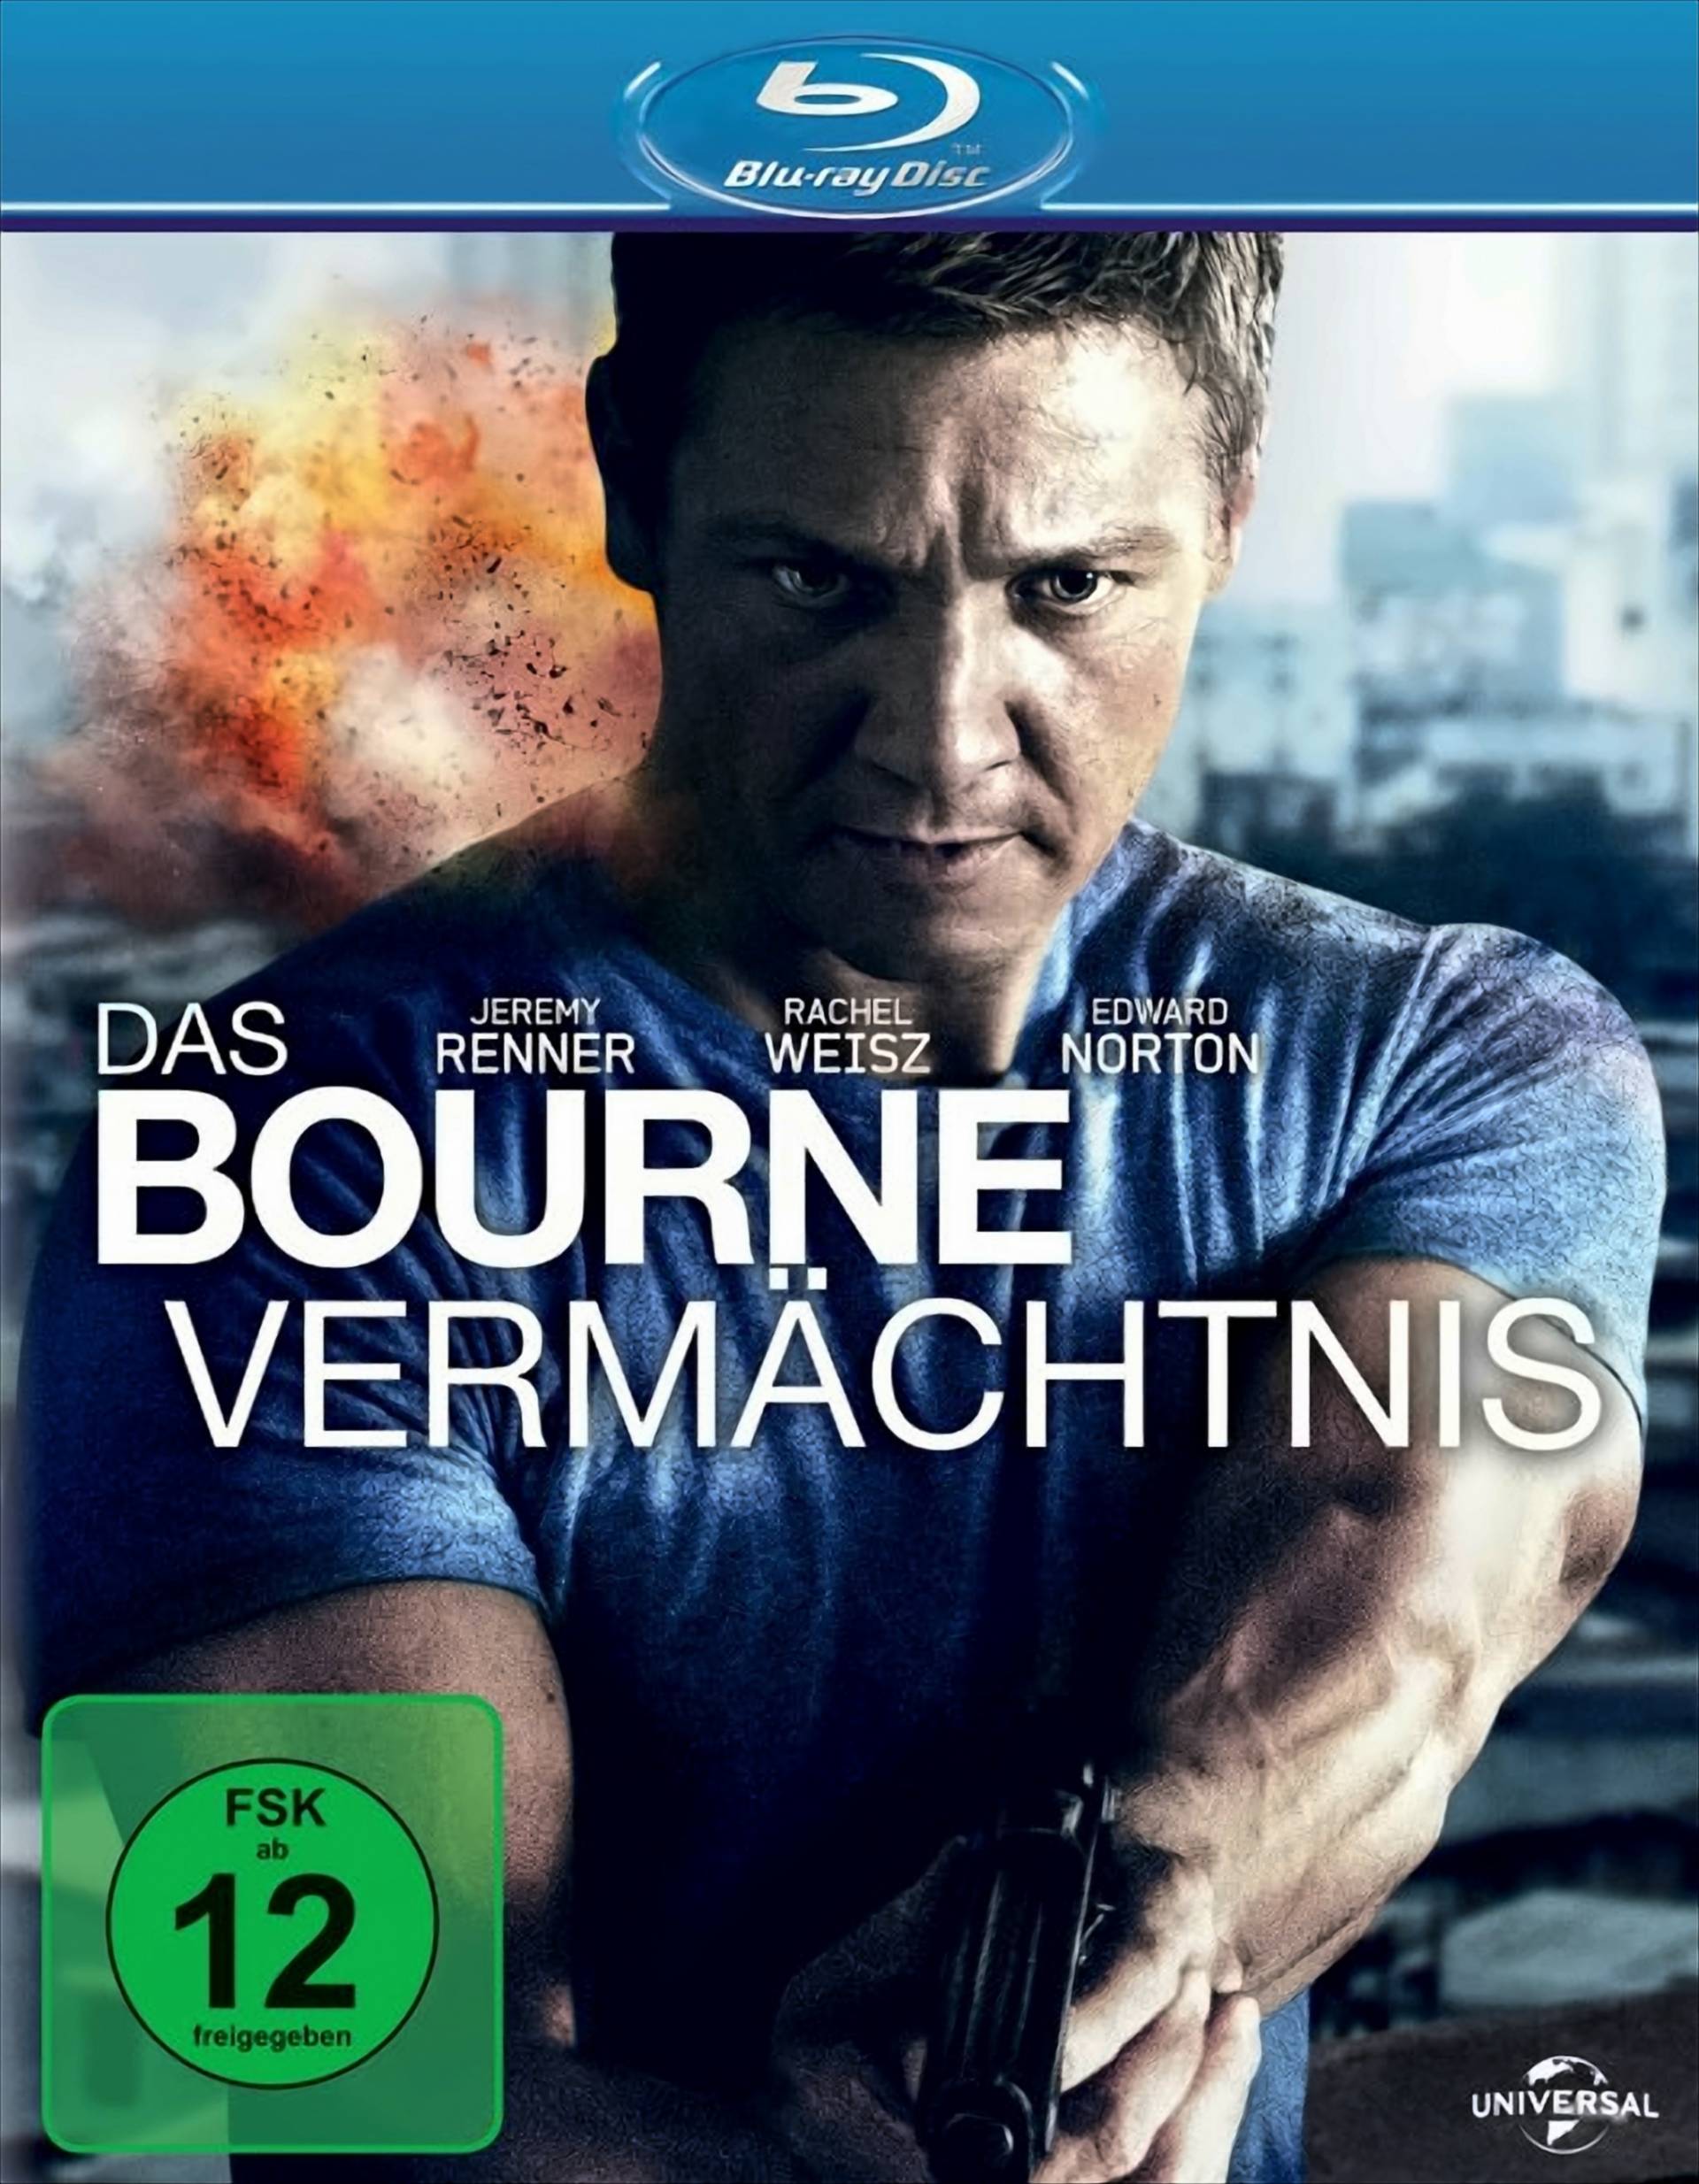 Das Bourne Vermächtnis von Universal Pictures